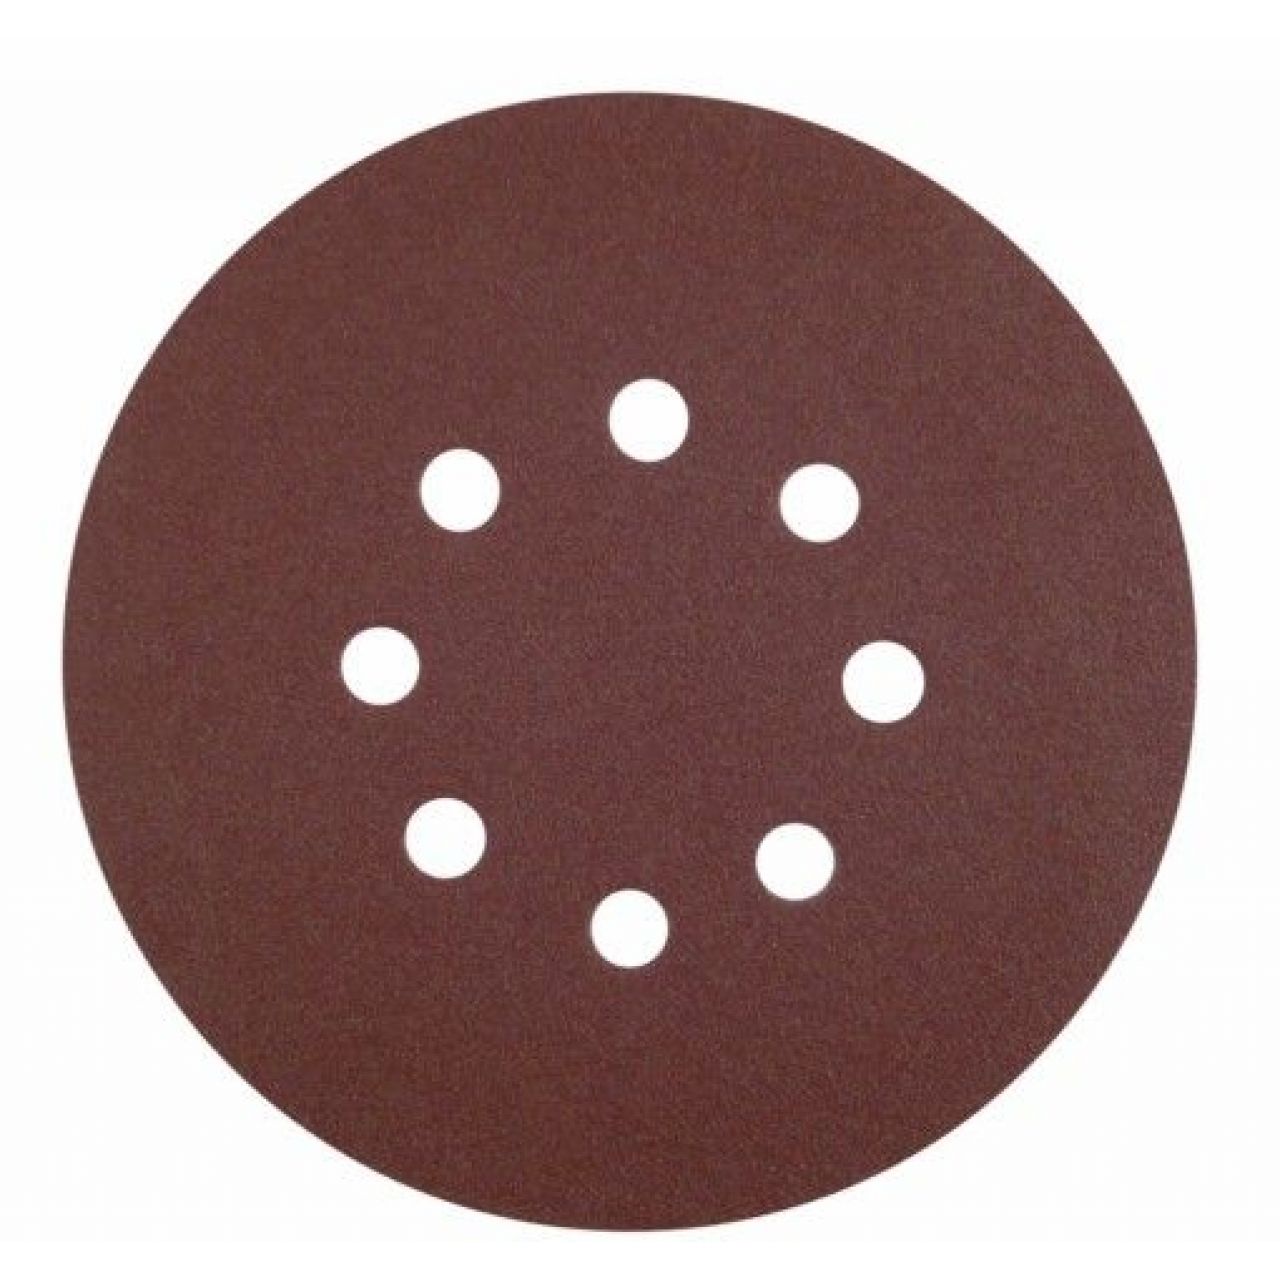 Caja de 50 discos de 115 mm de papel autoadhrente AO (8 agujeros; grano 120)